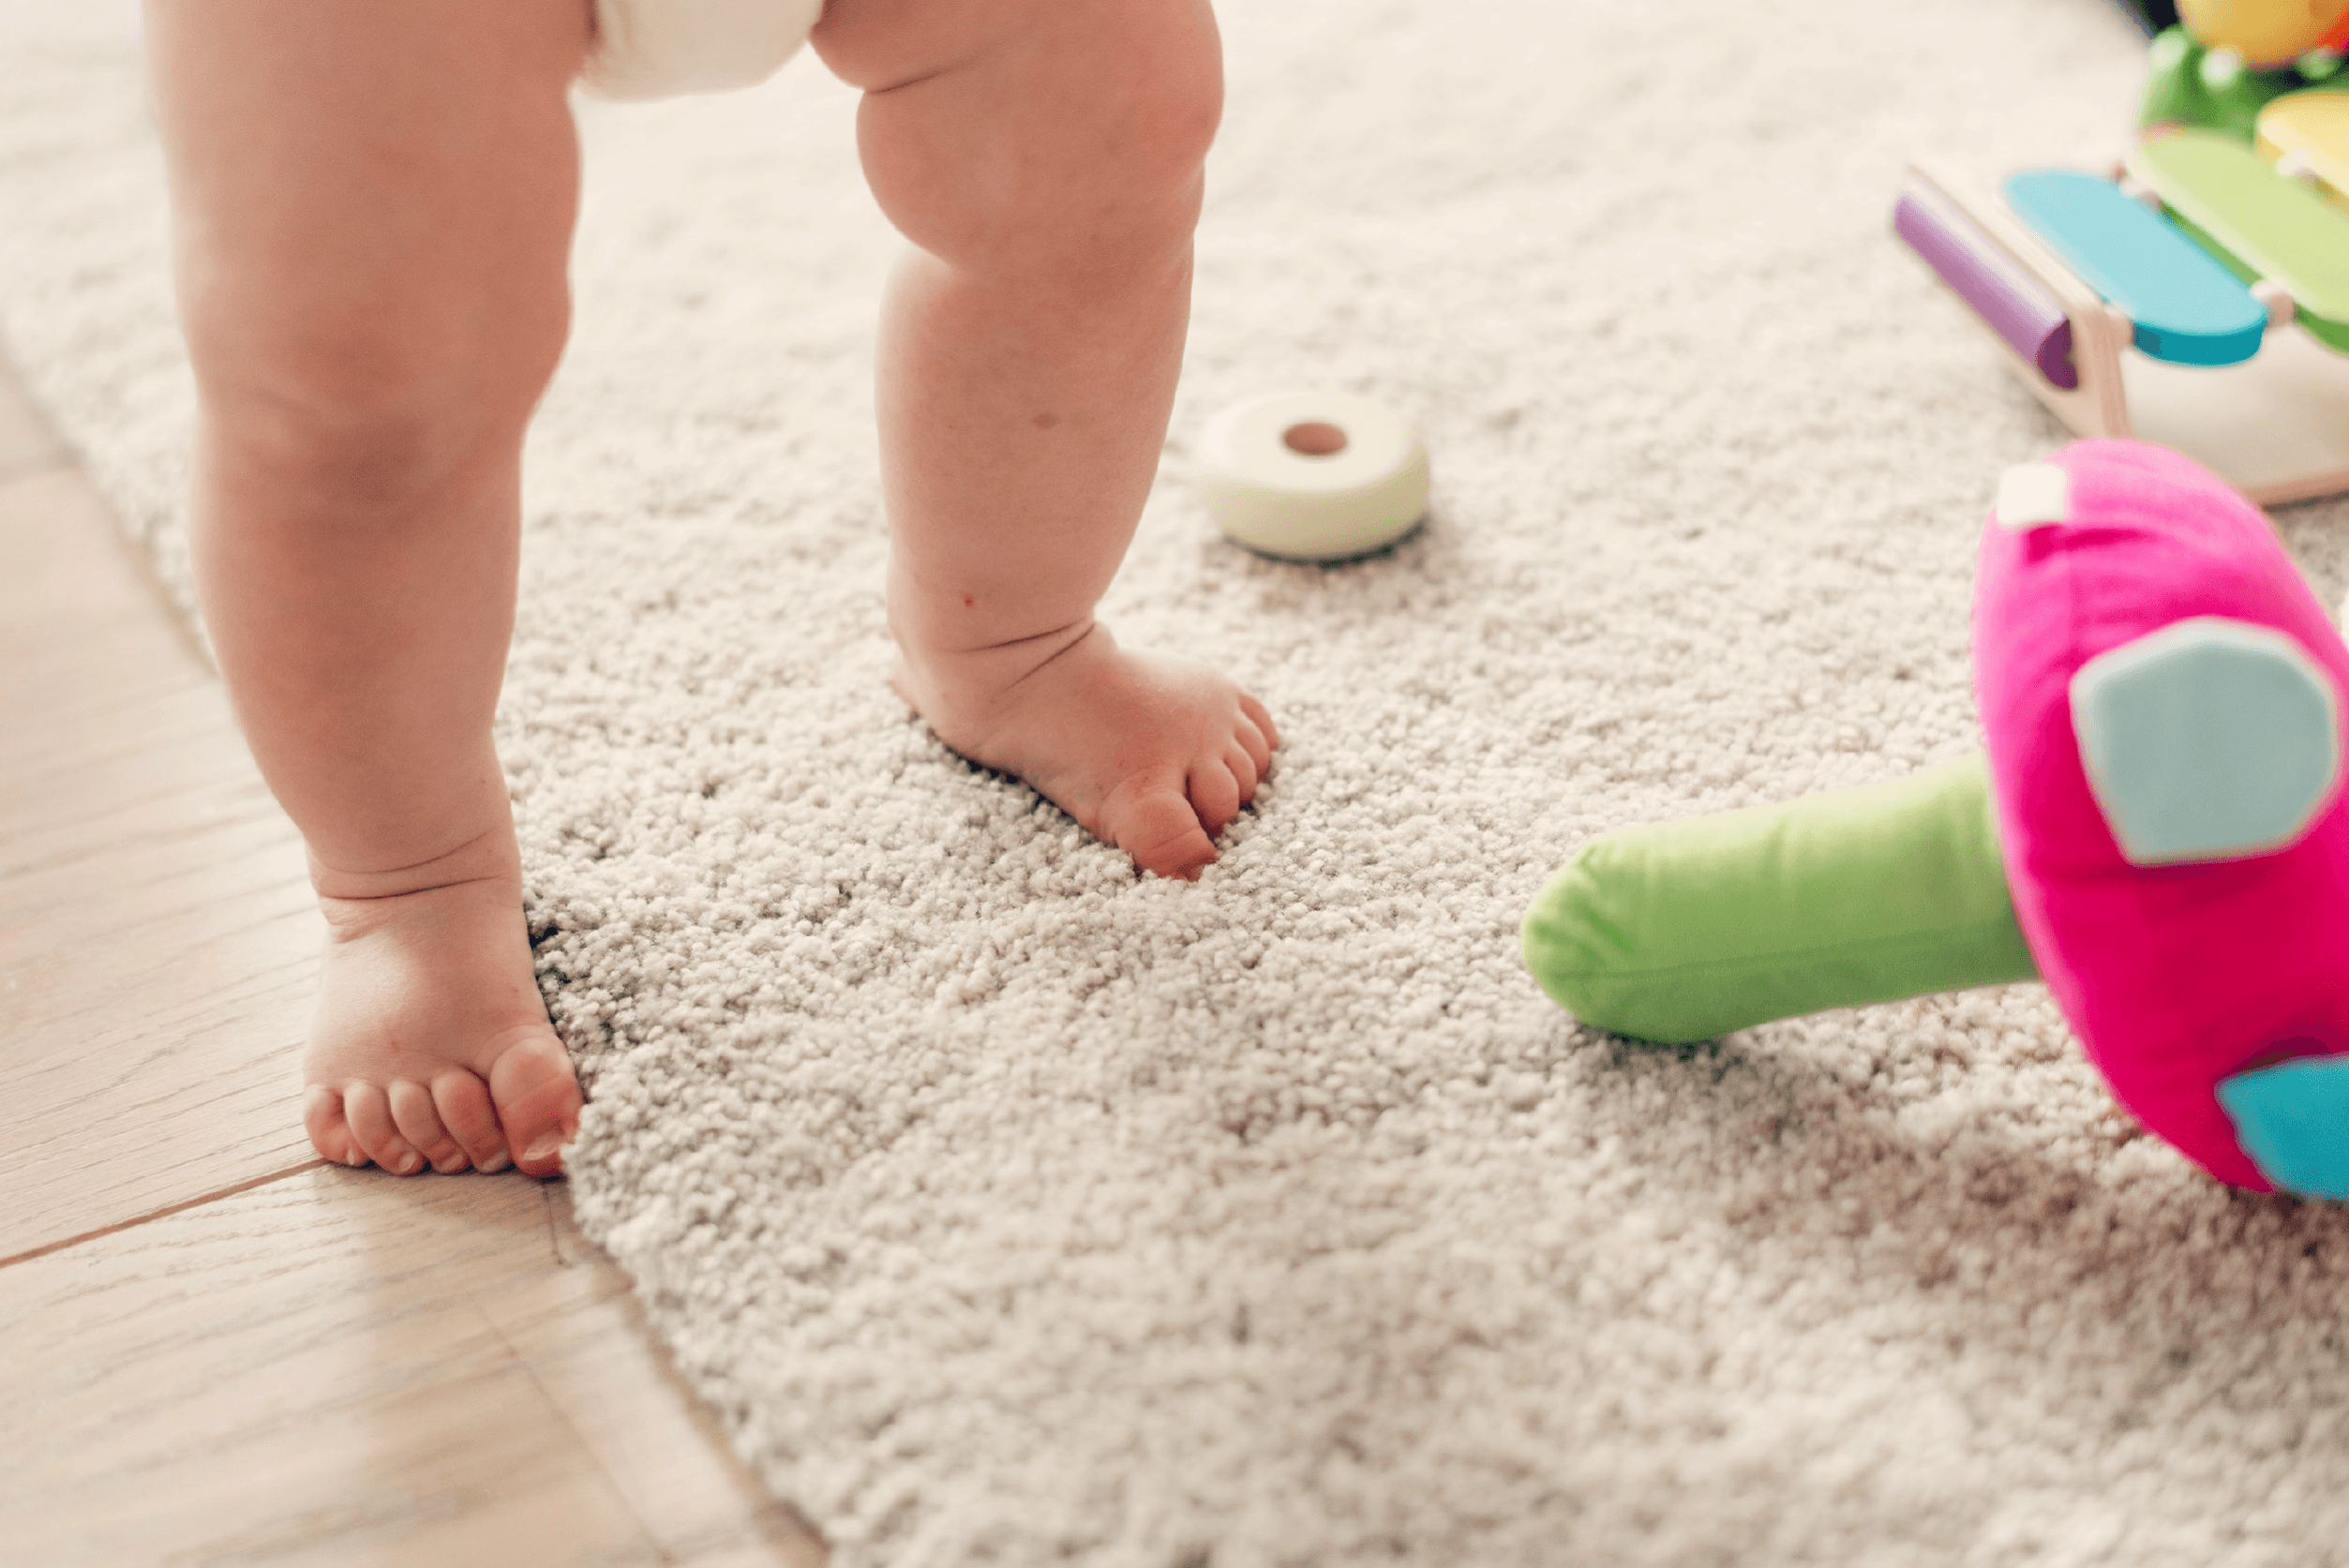 Calzado Respetuoso para Bebés: Cuidando sus Primeros Pasos